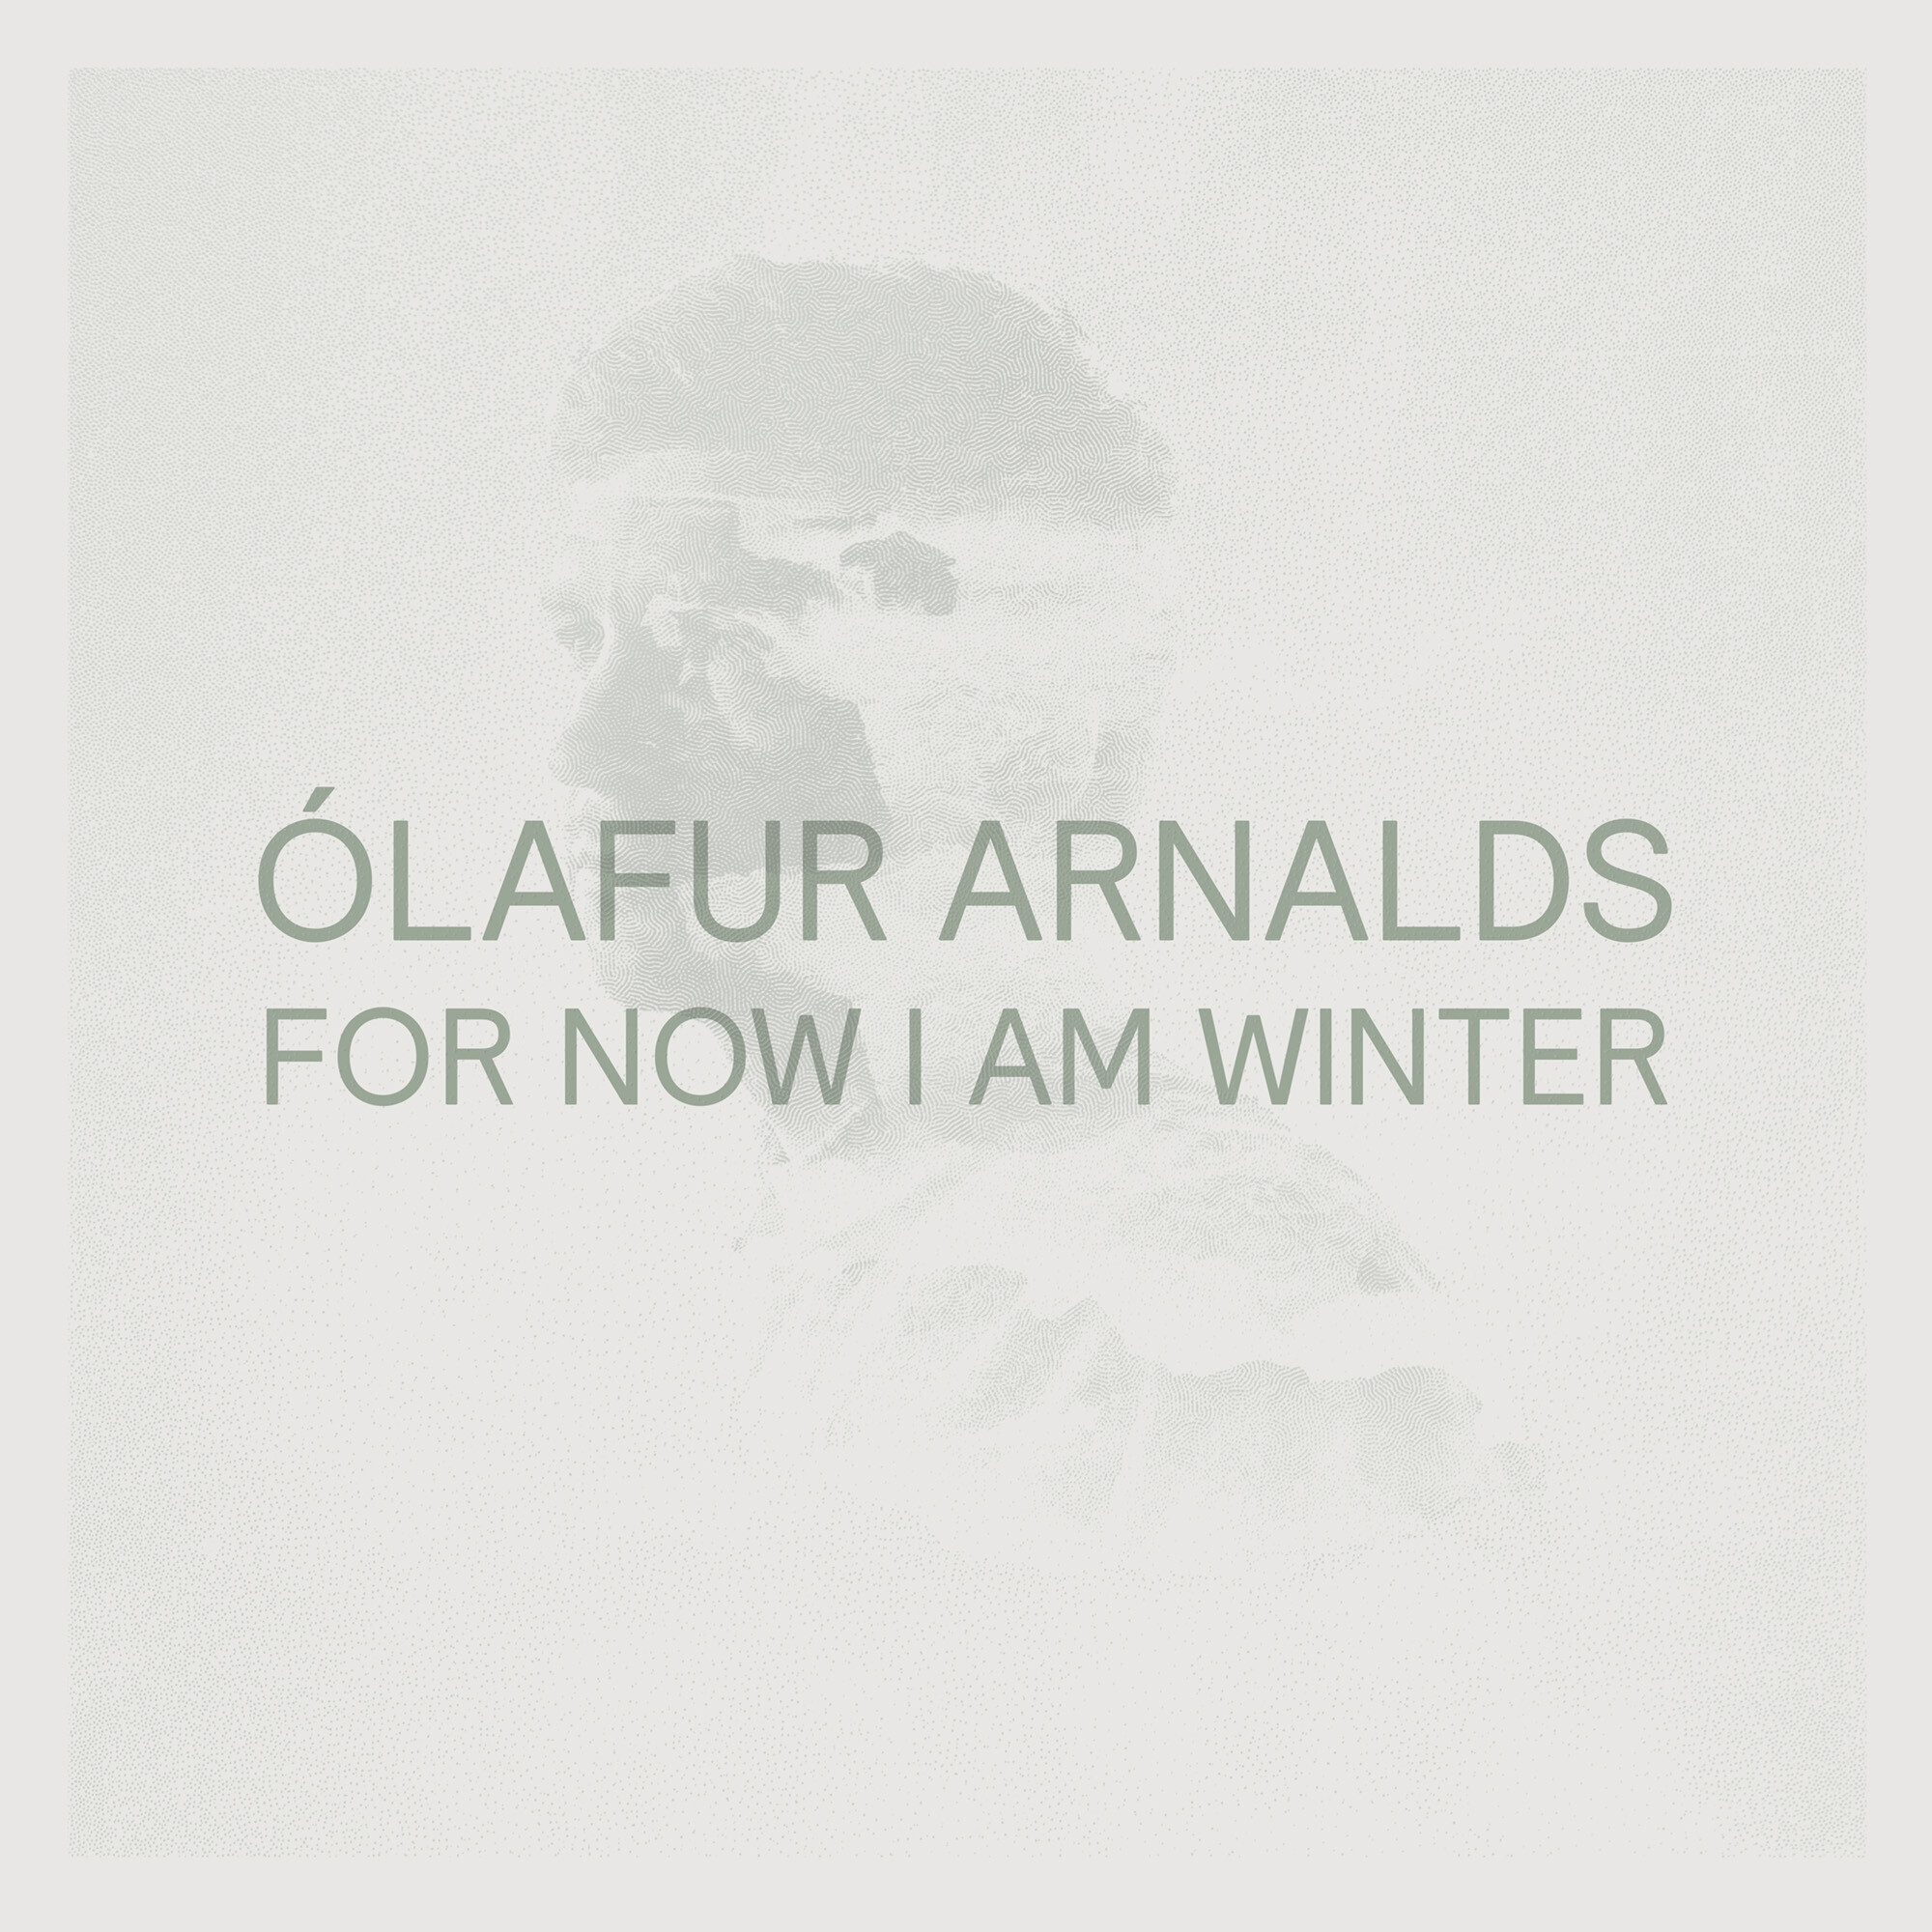 Deutsche Grammophon - Der offizielle Shop - For Now I am Winter  (Remastered) 10 Th annyversay Edt. - Olafur Arnalds - Limited Clear Vinyl LP